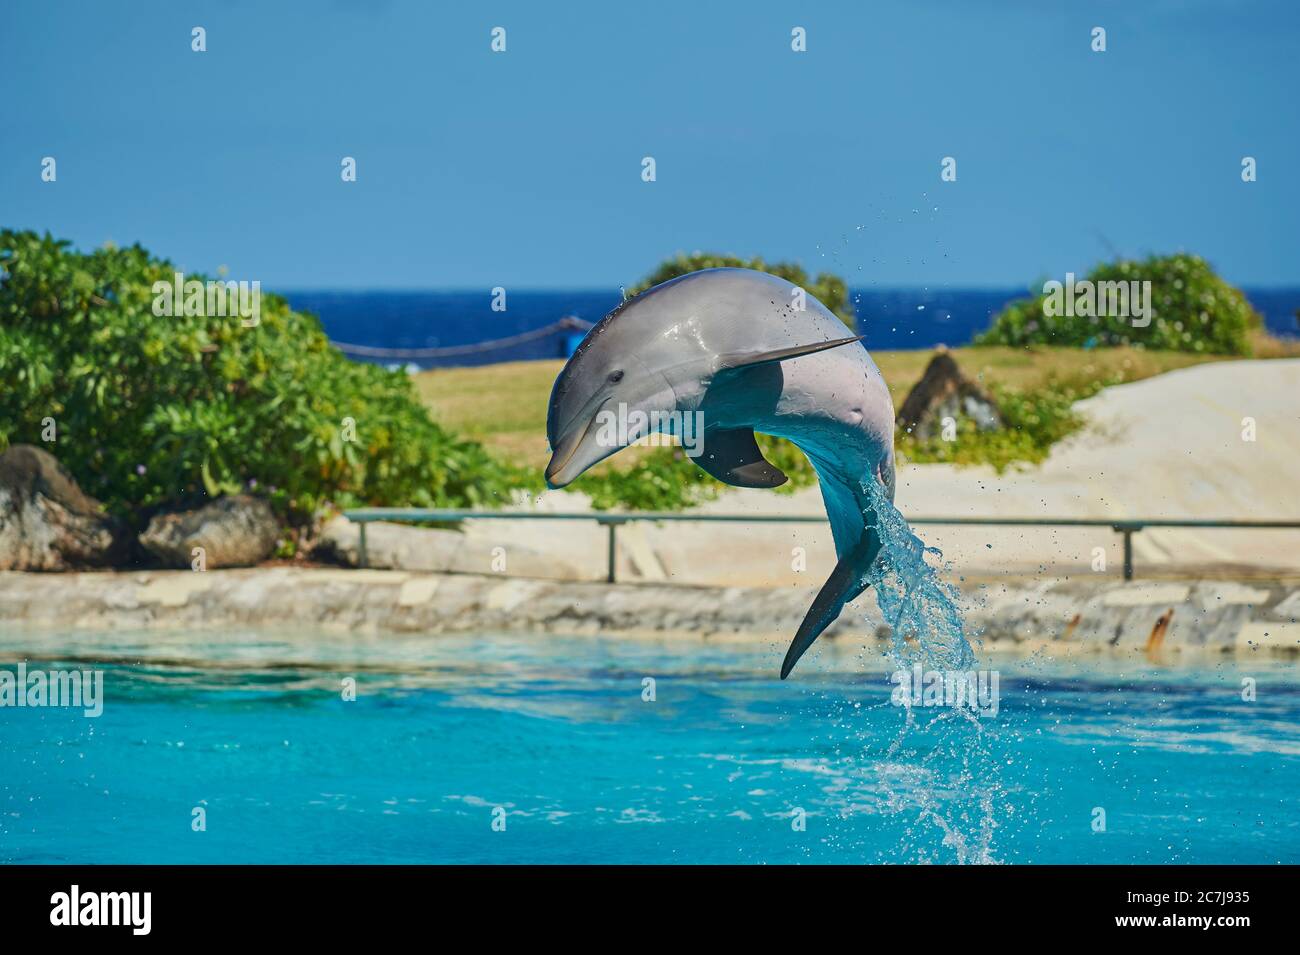 Dauphin à nez en bouteille, dauphin à nez en bouteille (Tursiops truncatus), sautez dans un dauphinarium Banque D'Images